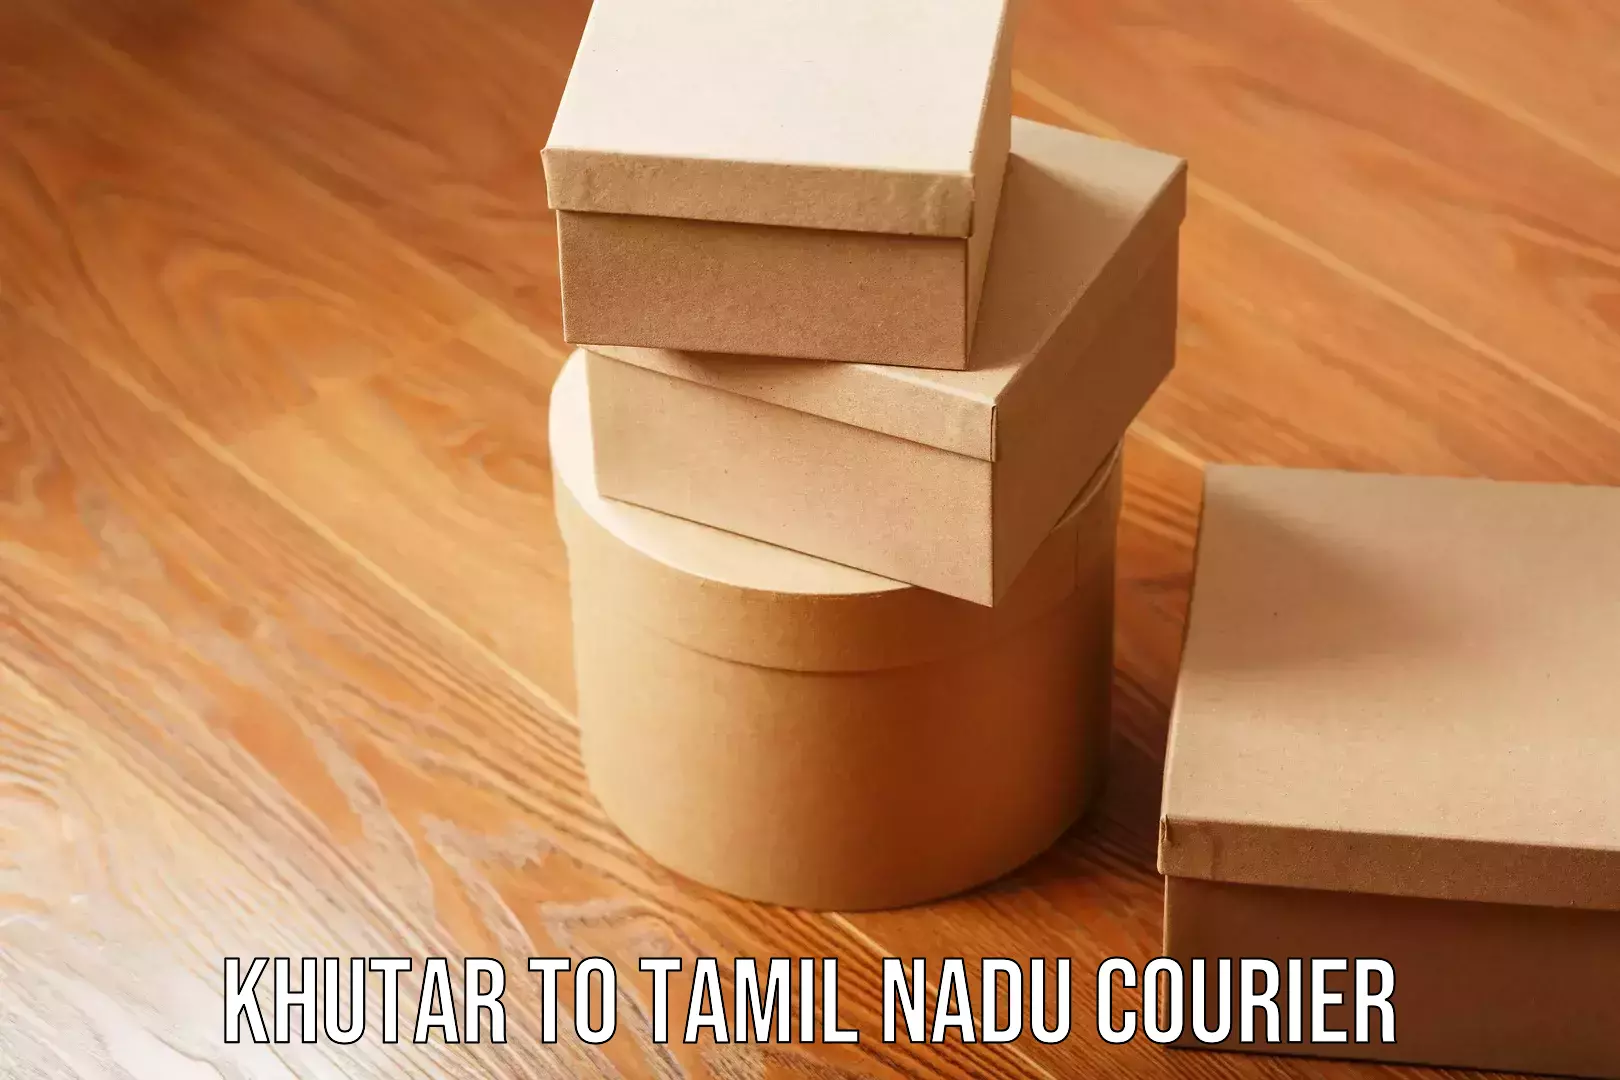 Comprehensive moving assistance Khutar to Tamil Nadu